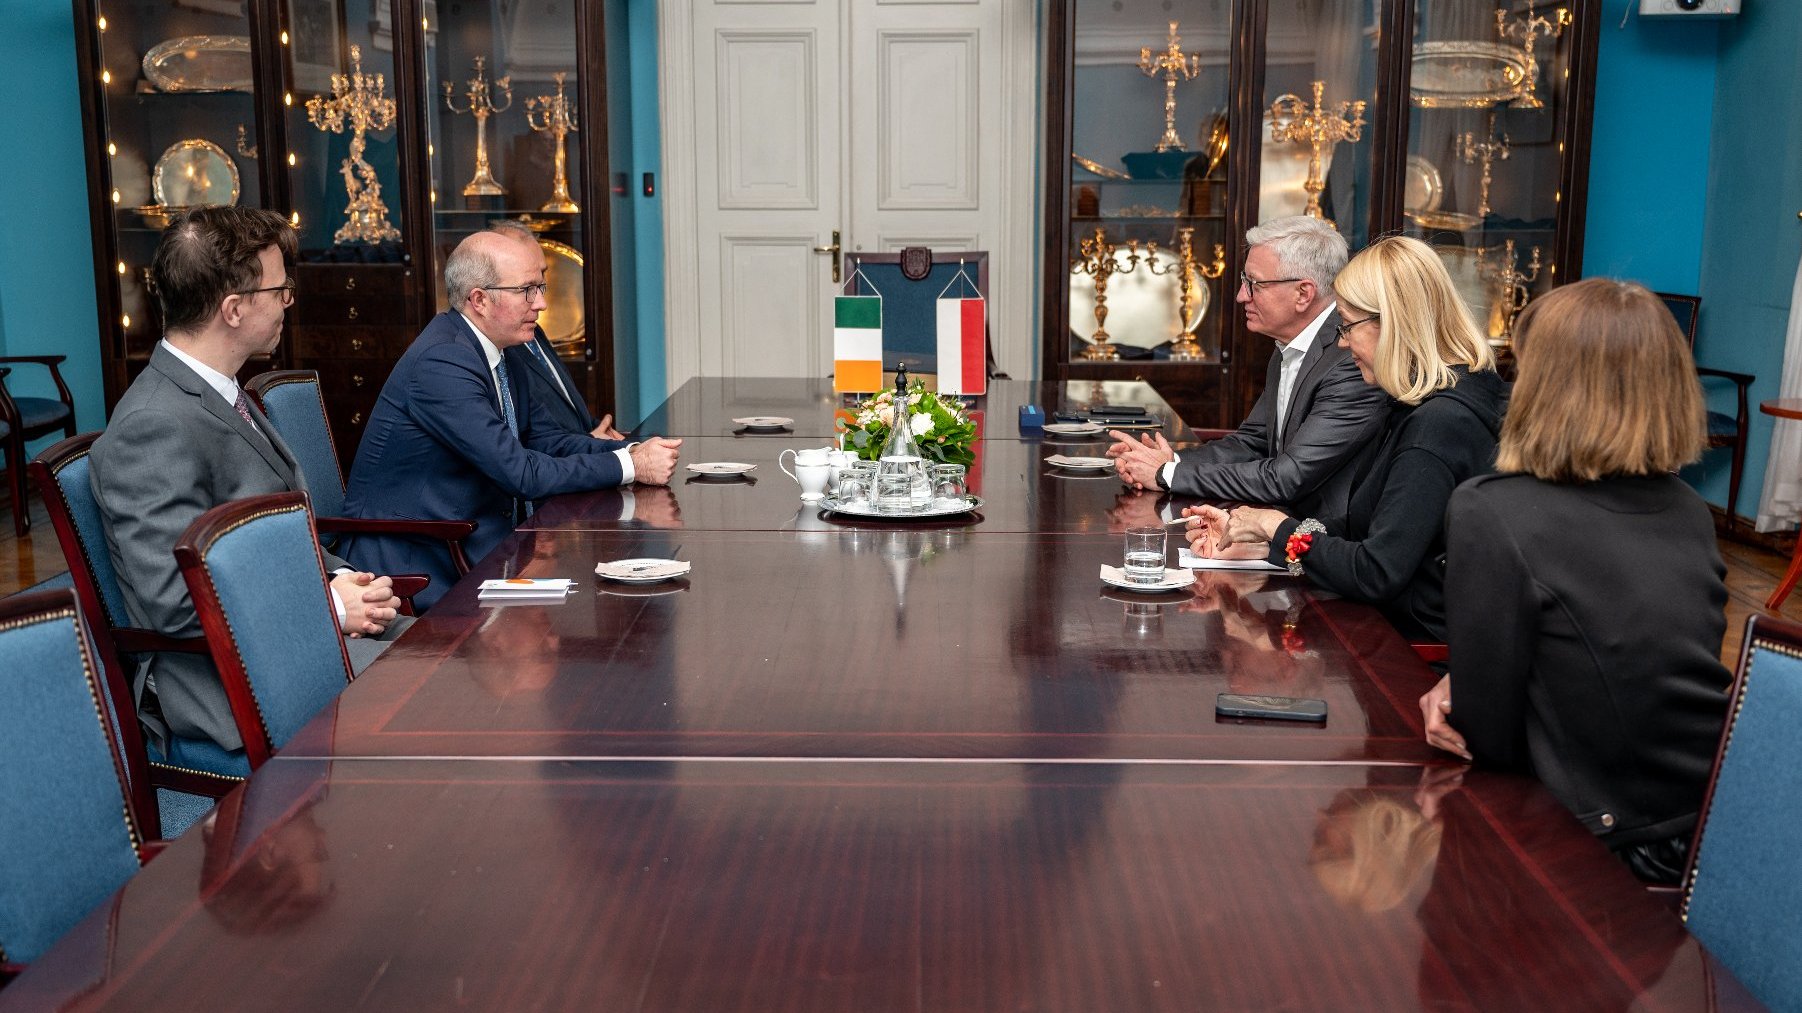 spotkanie dyplomatyczne w Sali Niebieskiej, na stole flaga polska i irlandzka